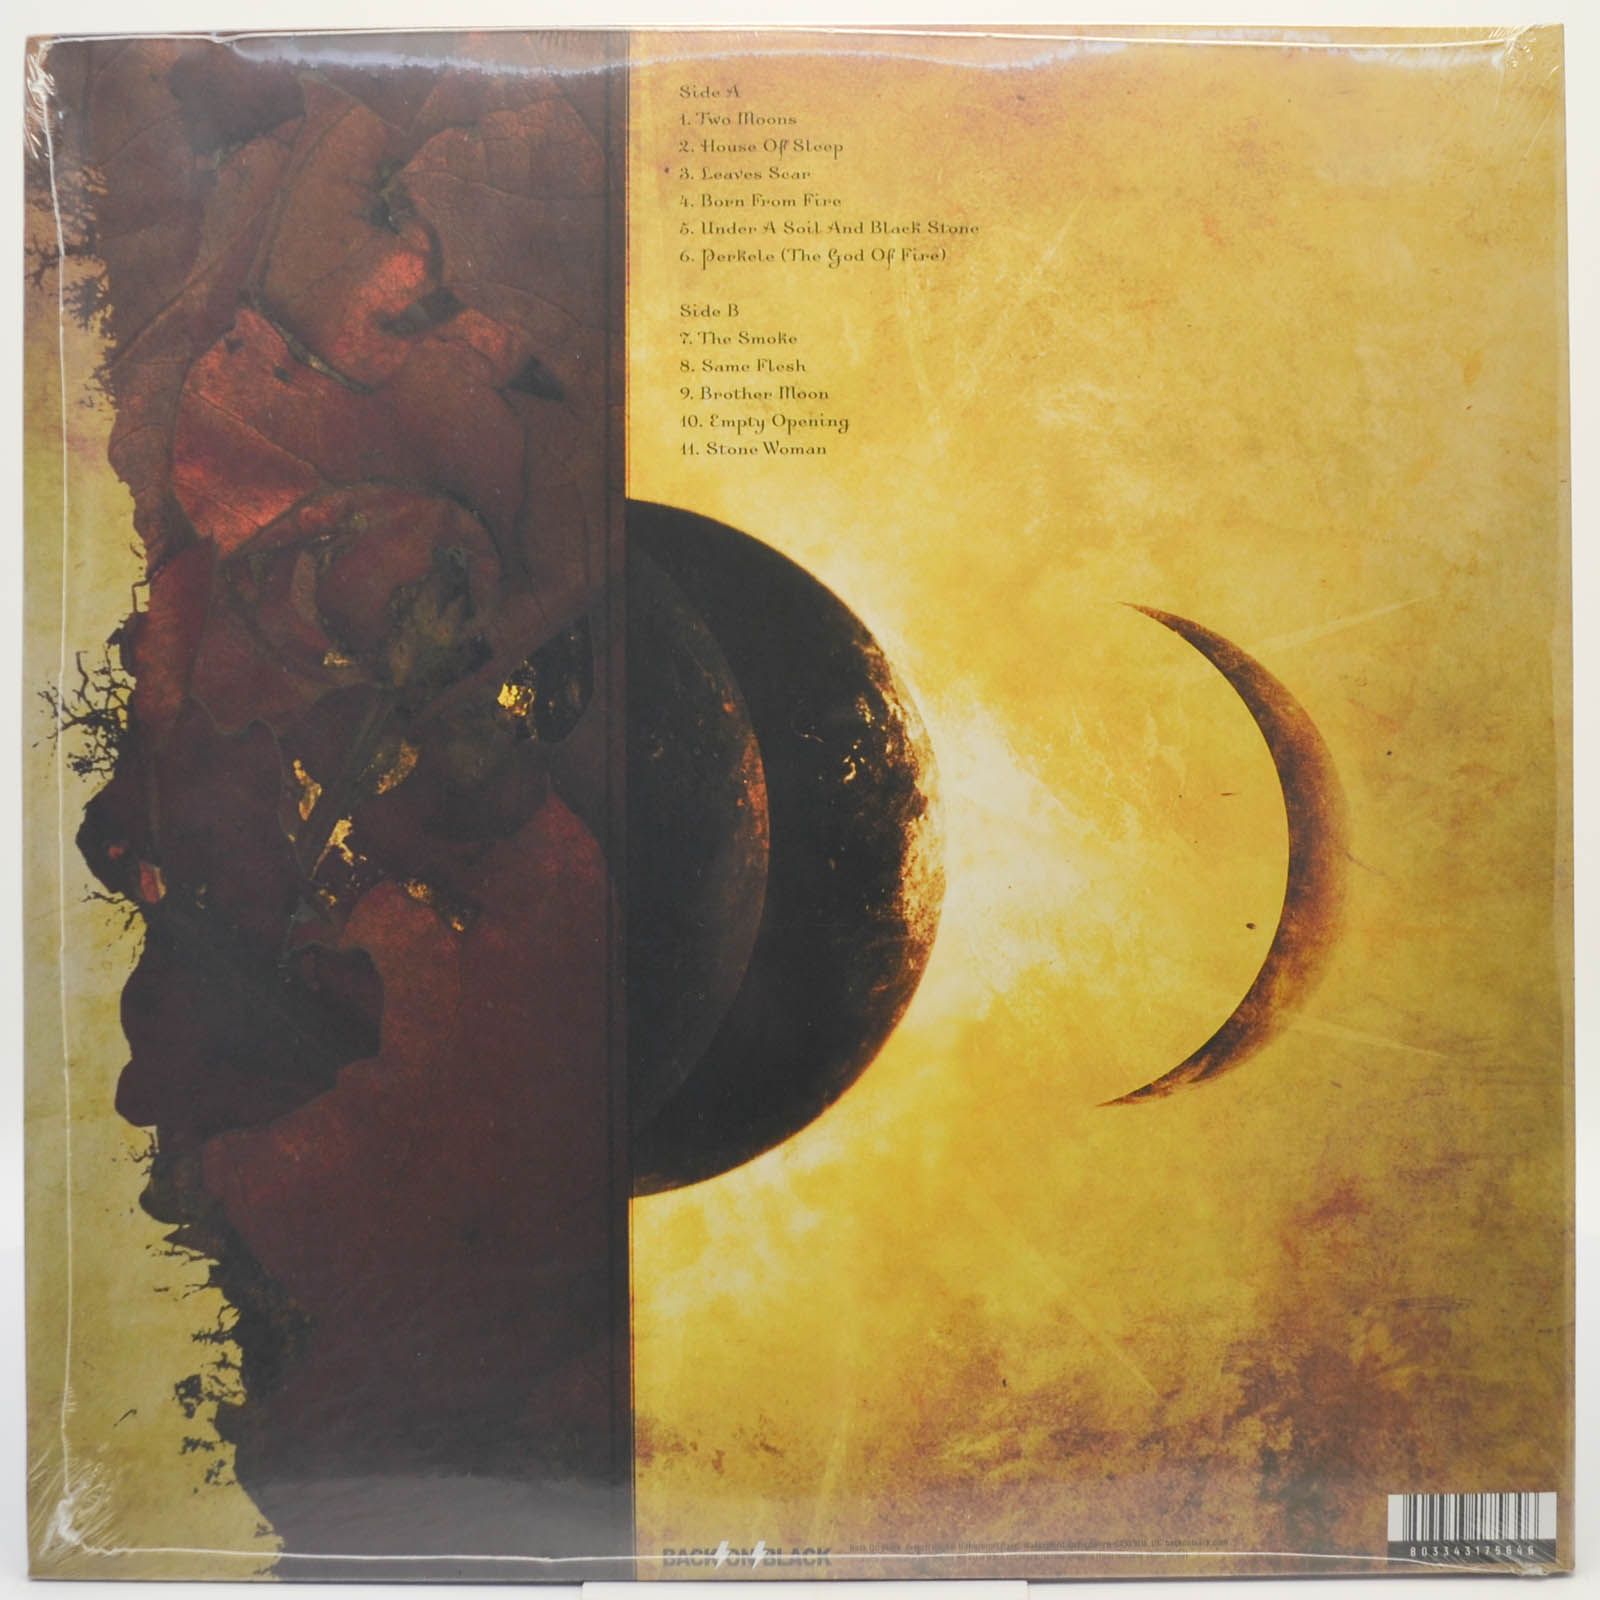 Amorphis — Eclipse, 2006